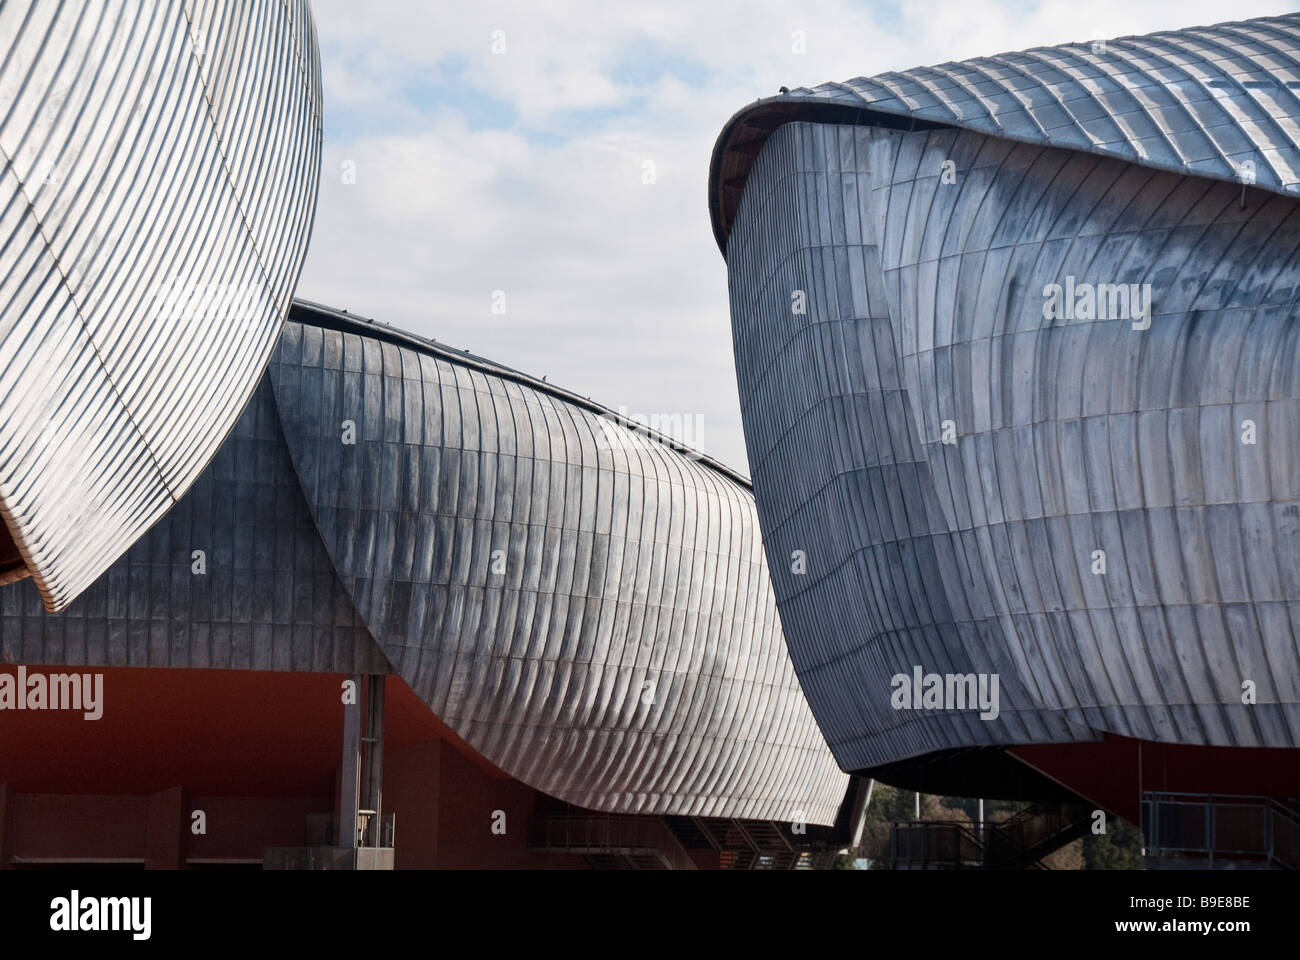 Die Blei-Schalen von The Auditorium, drei Konzertsäle in der Parco della Musica von dem Architekten Renzo Piano entworfen Stockfoto